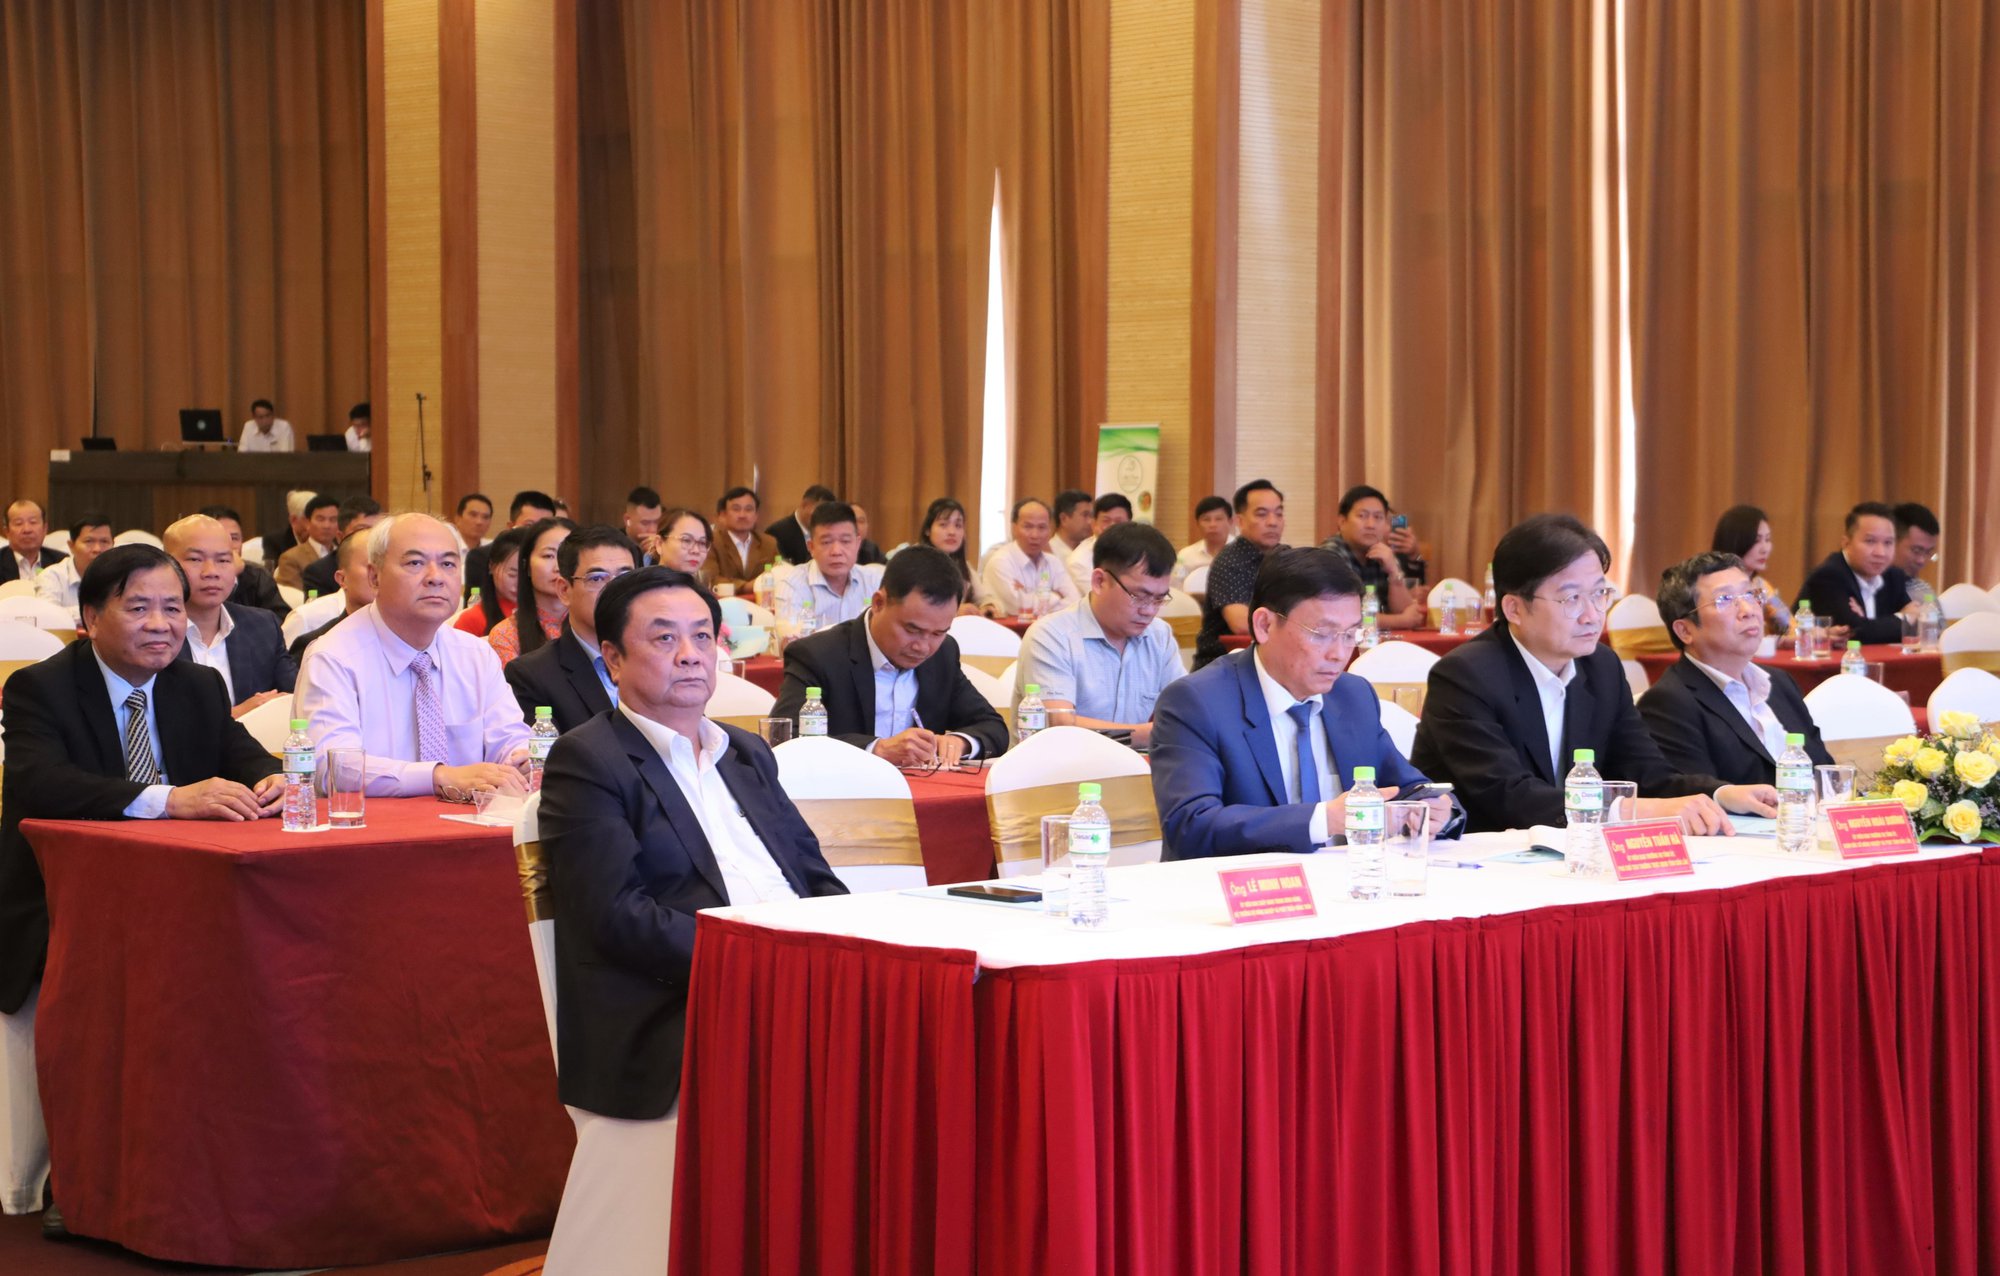 Hiệp hội Sầu riêng tỉnh Đắk Lắk tổ chức Đại hội lần thứ I - Ảnh 1.